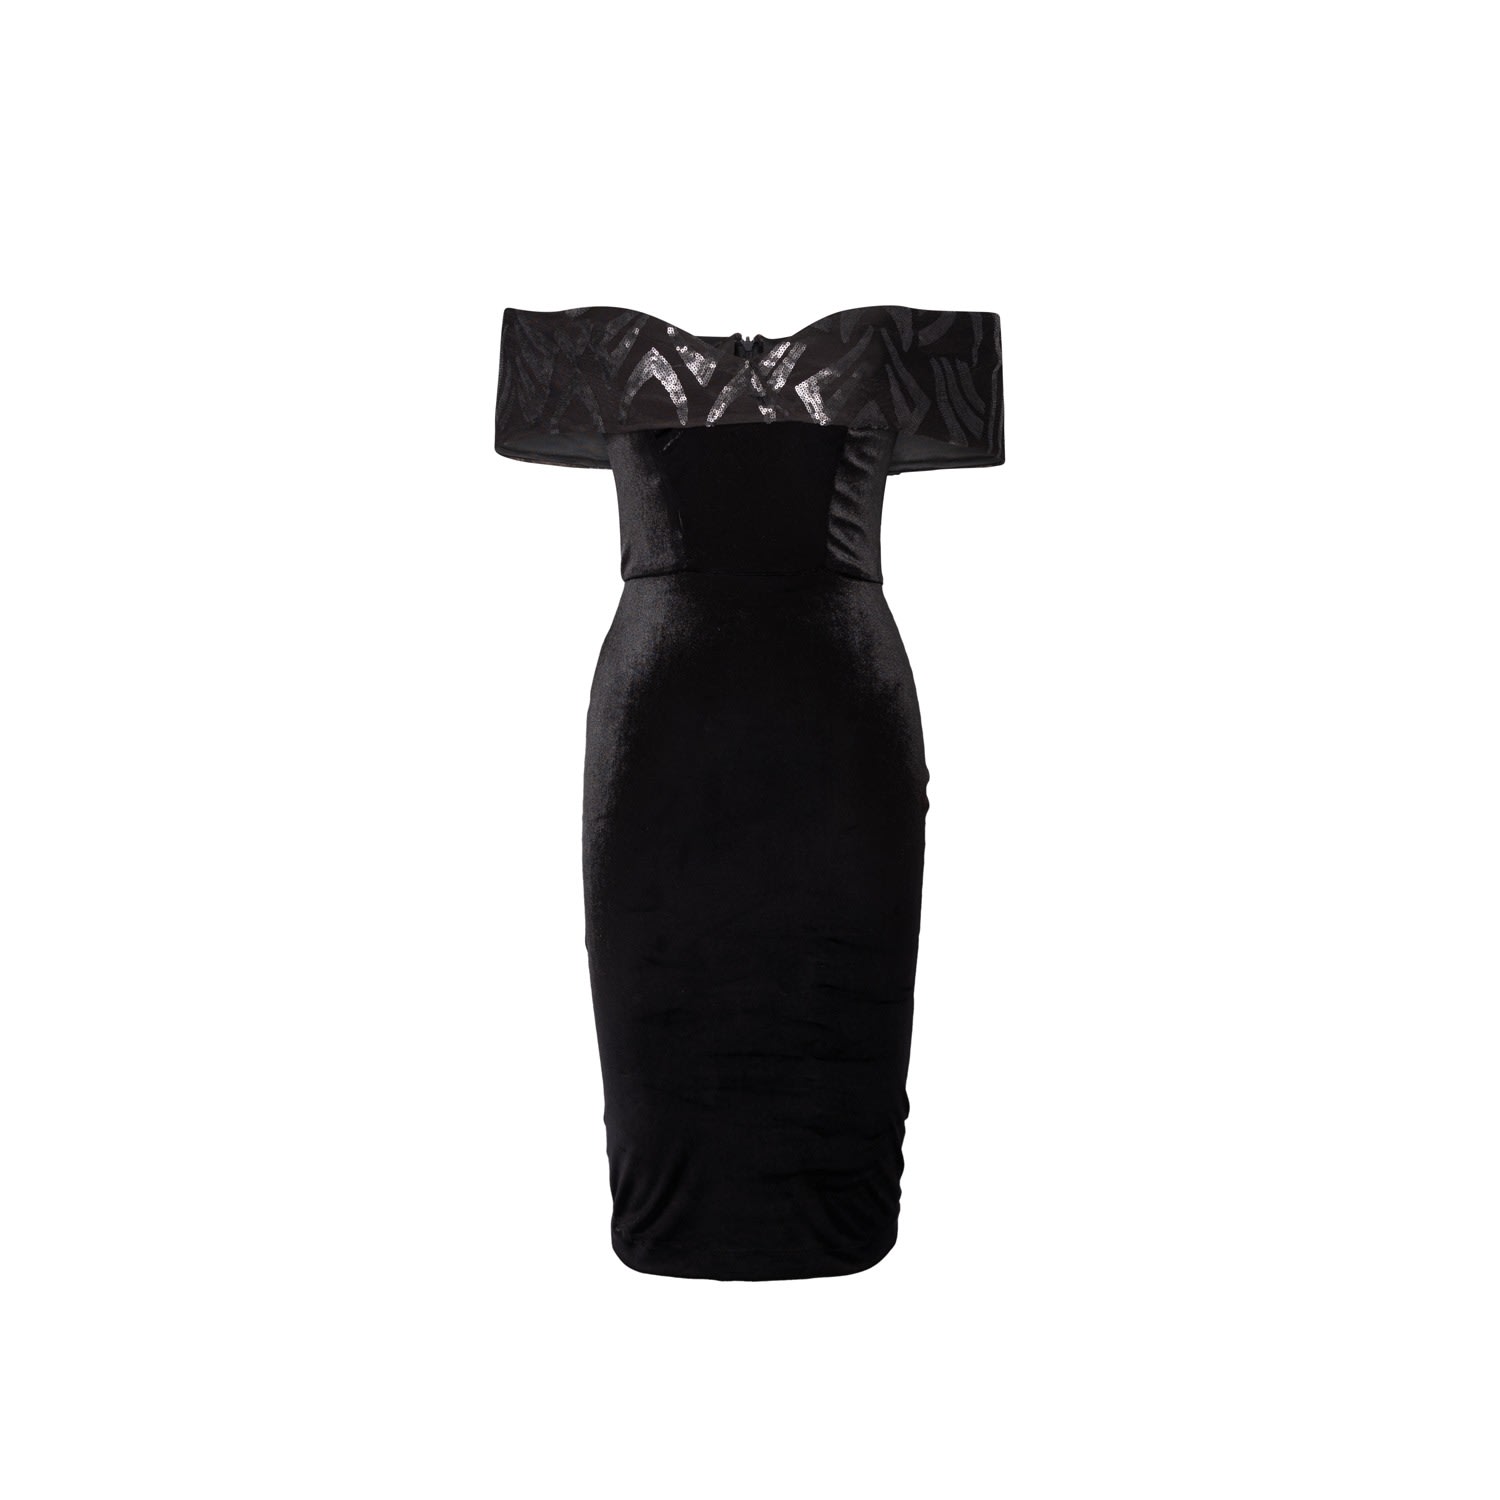 Women’s Cocktail Dress In Black Velvet Whit Sequin Embellished Neckline Large Vidi Blak